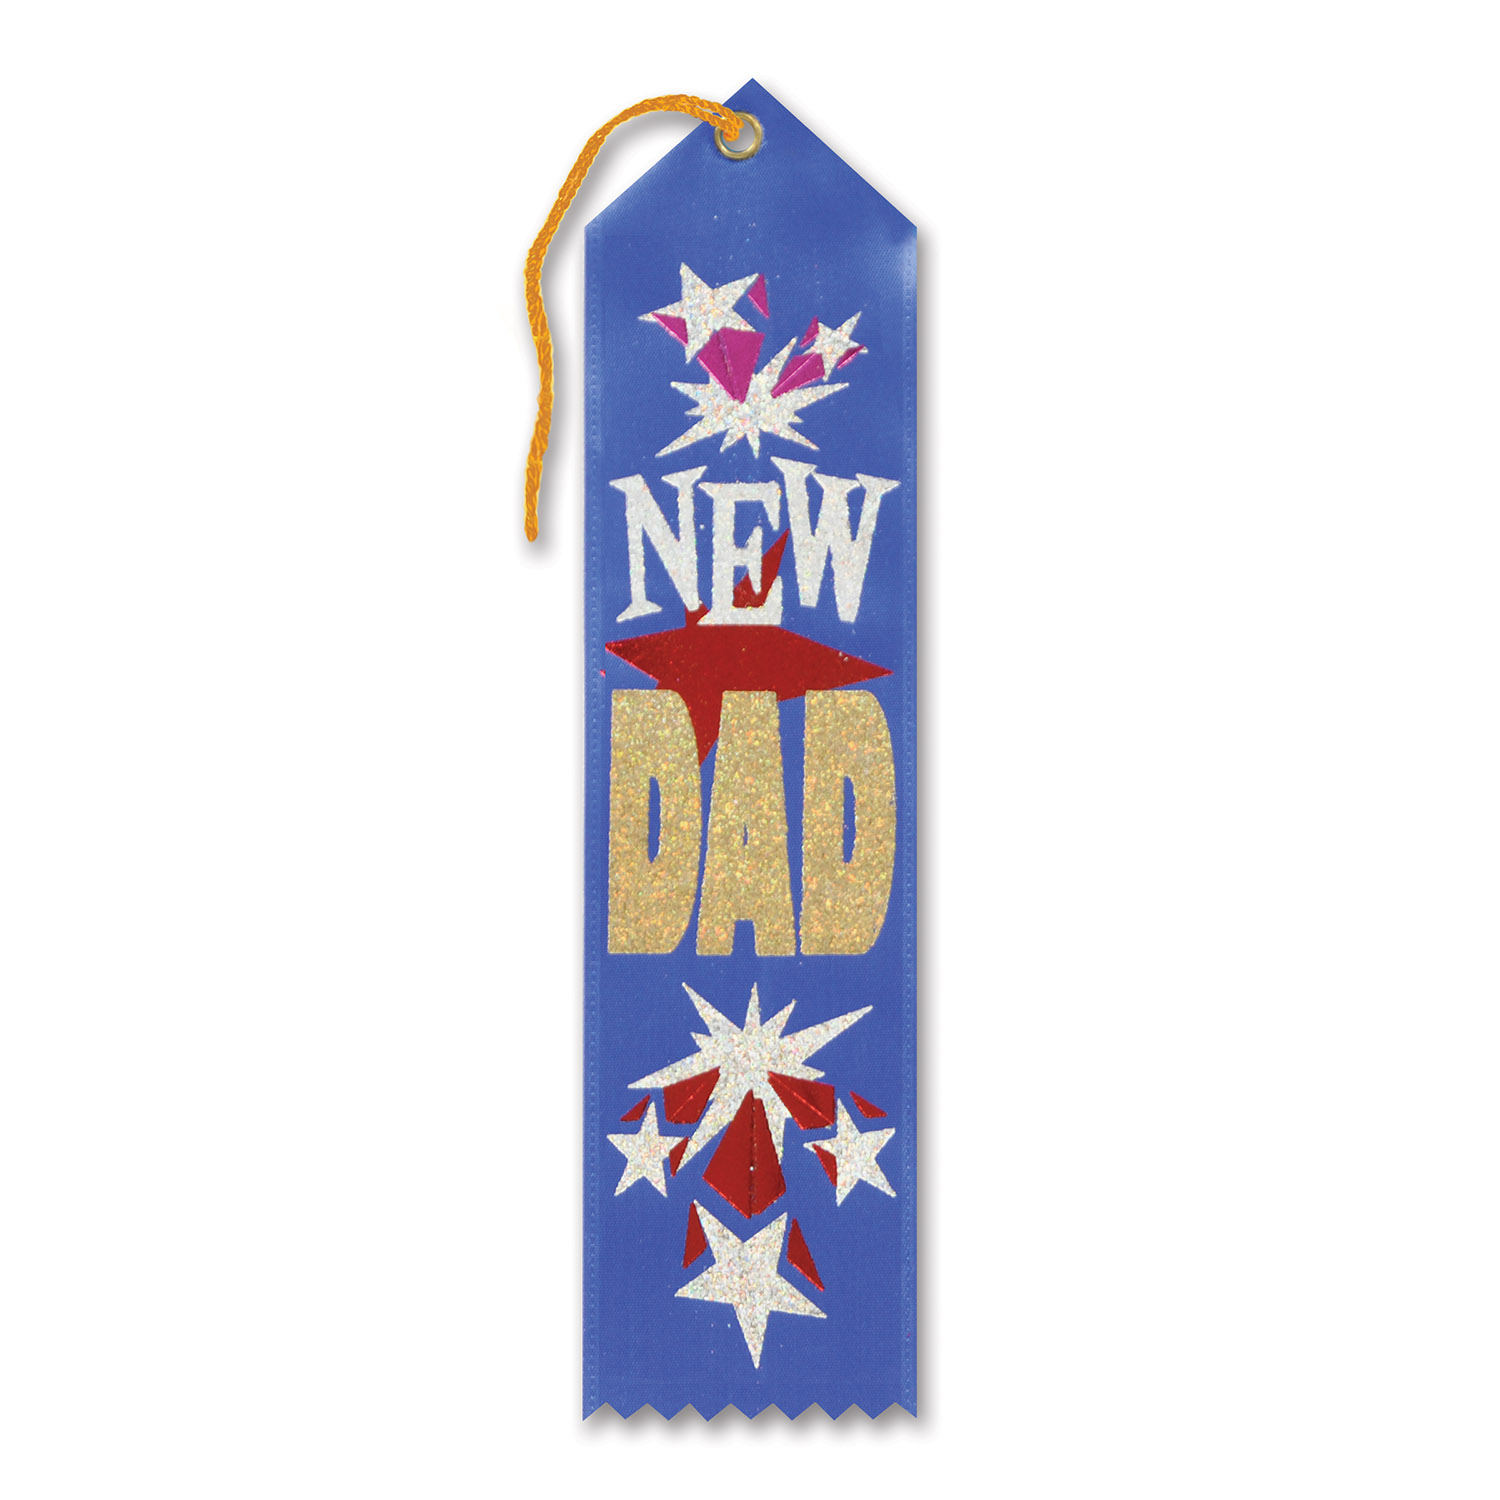 NEW Dad Award Ribbon